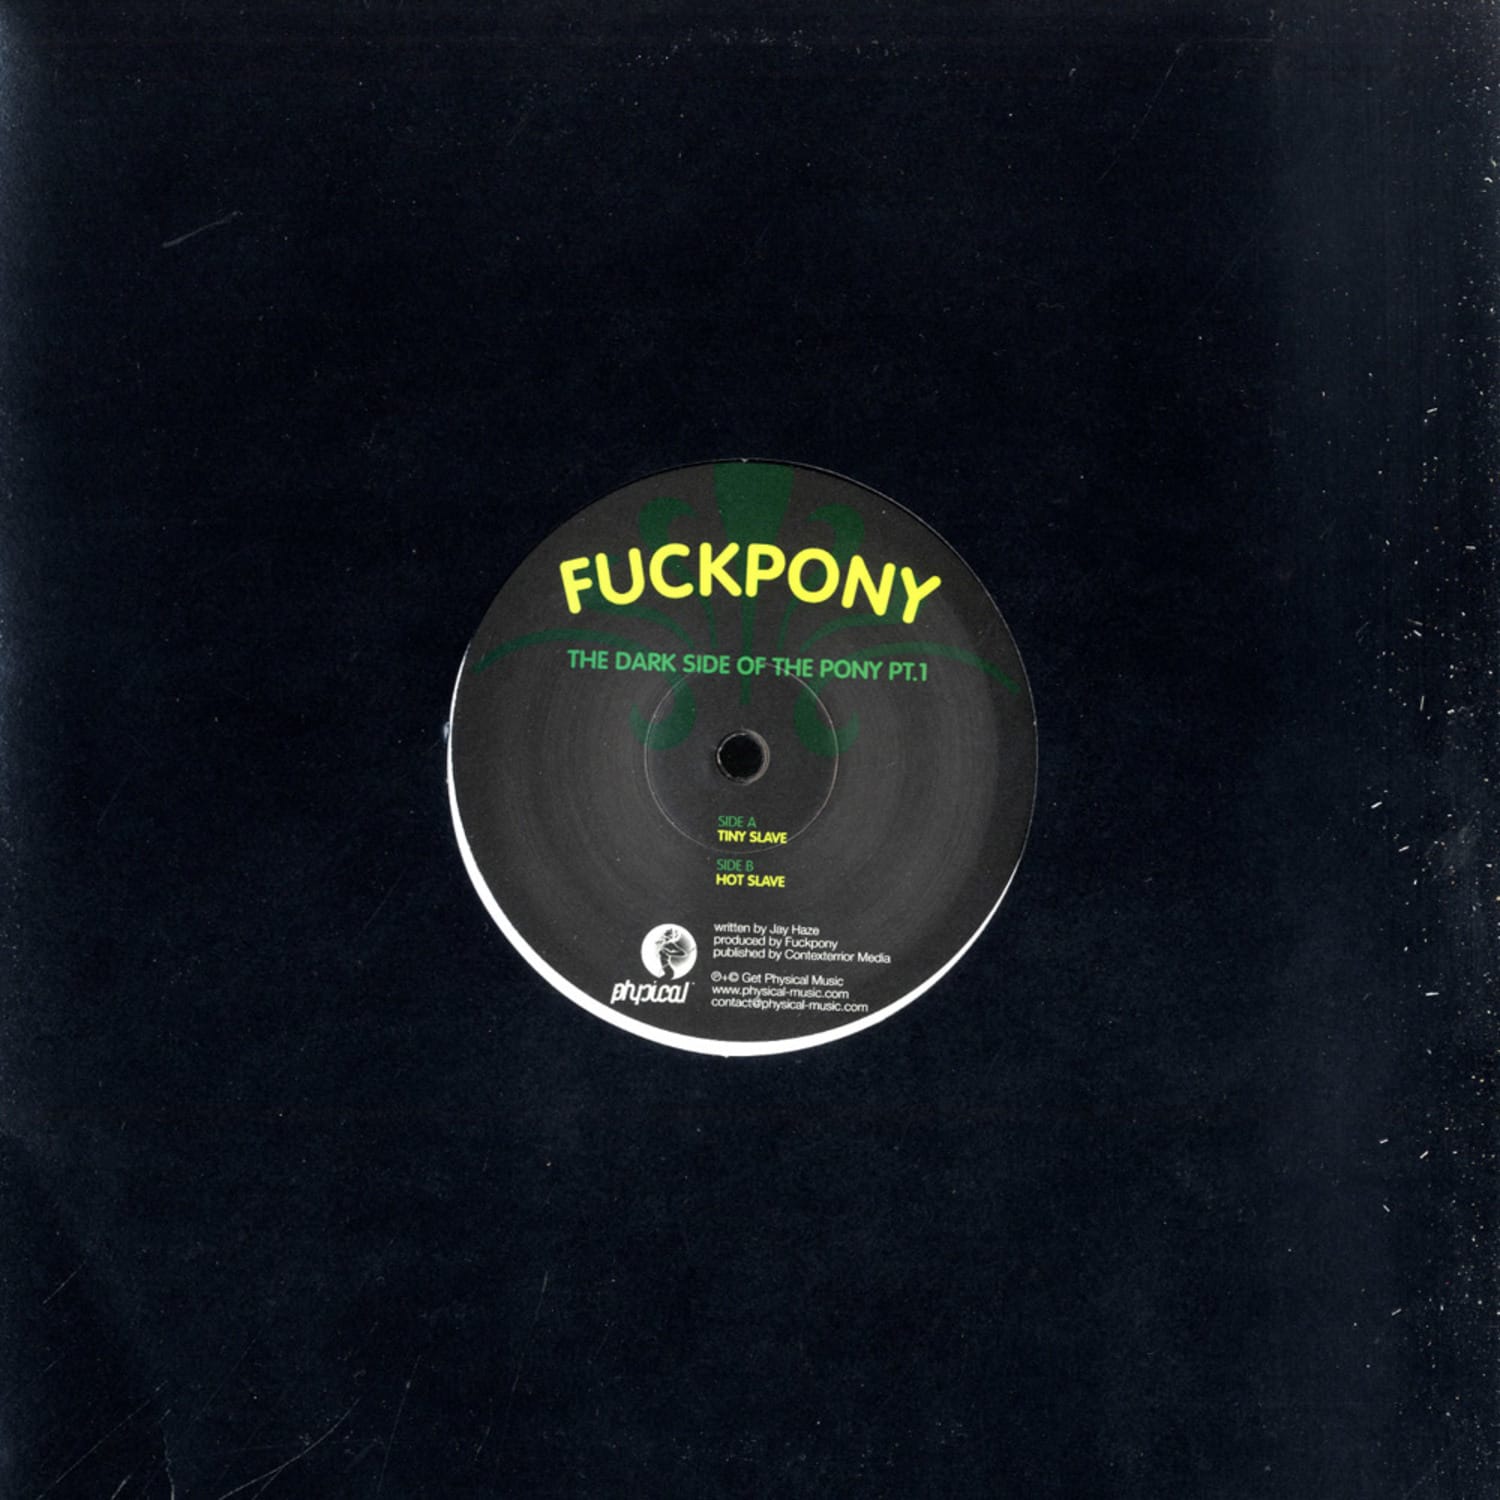 Fuckpony - THE DARK SIDE OF THE PONY PT. 1 